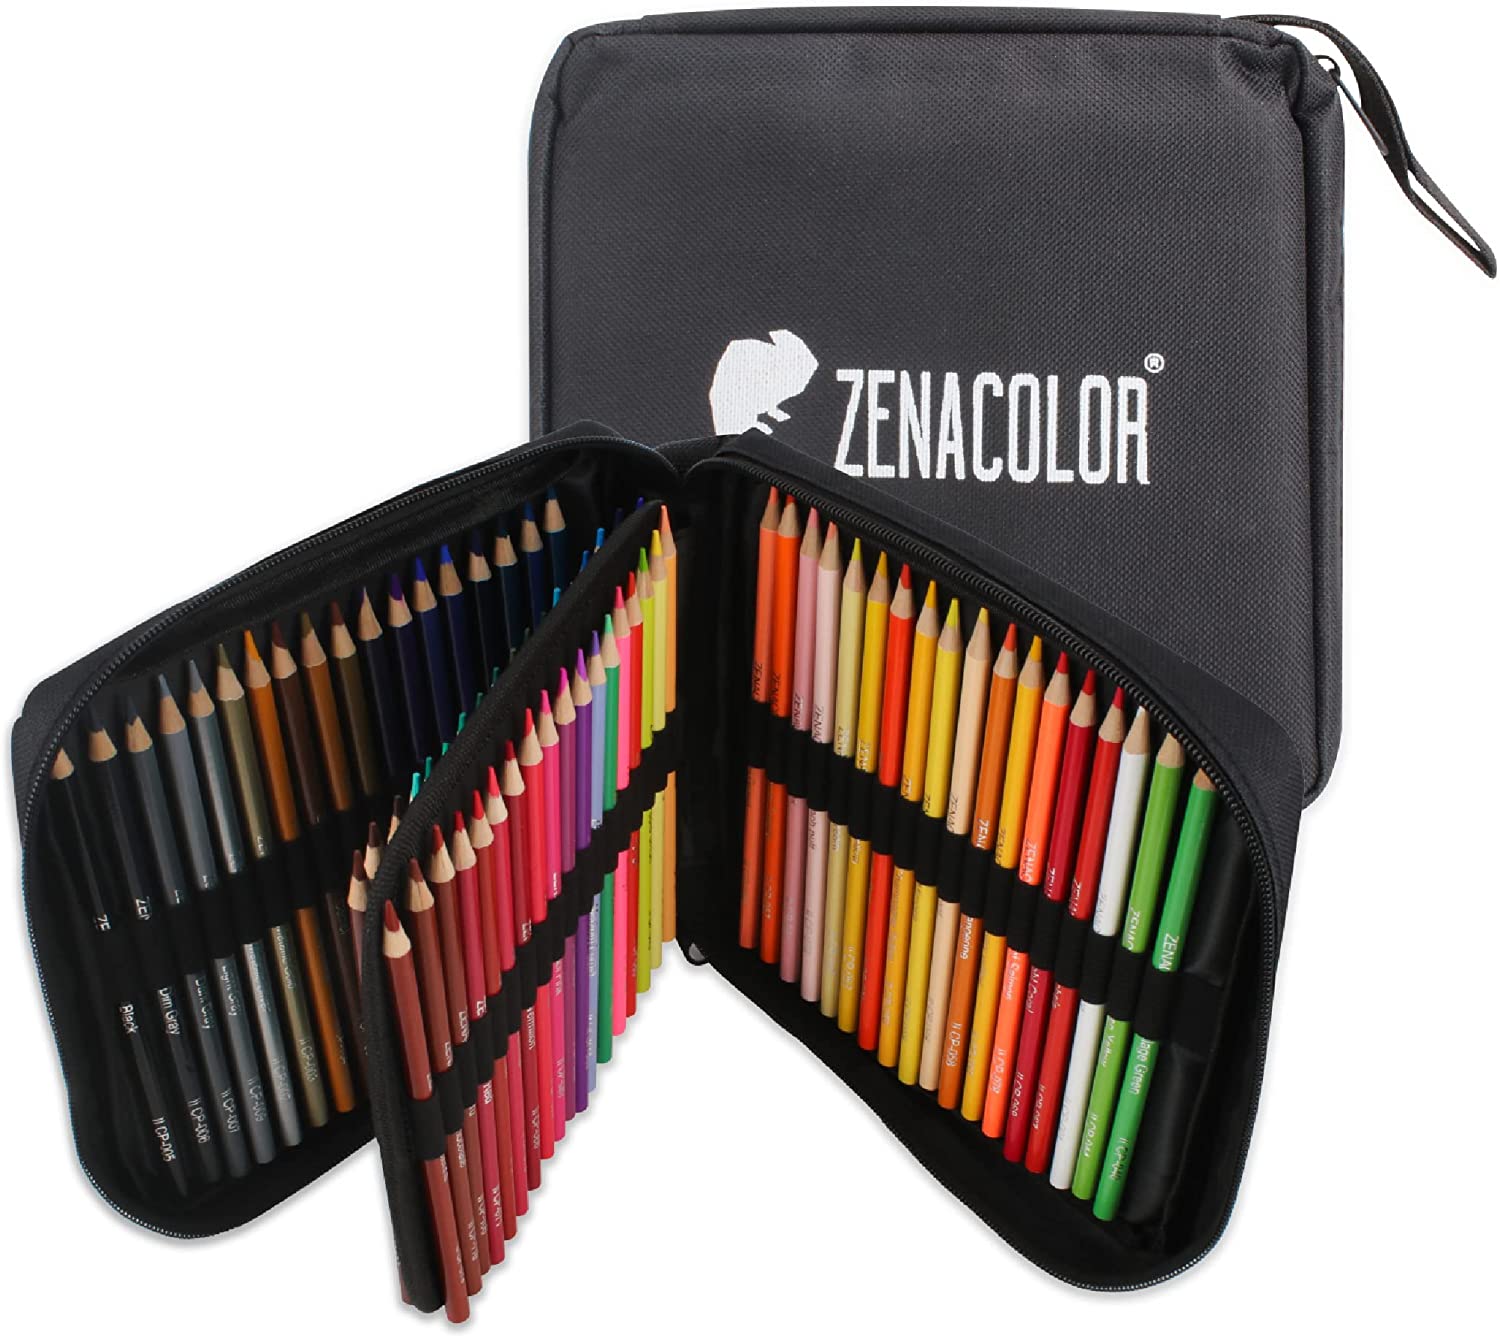 Trousse de 24 crayons de couleurs Polycolor par Lyra - Creastore